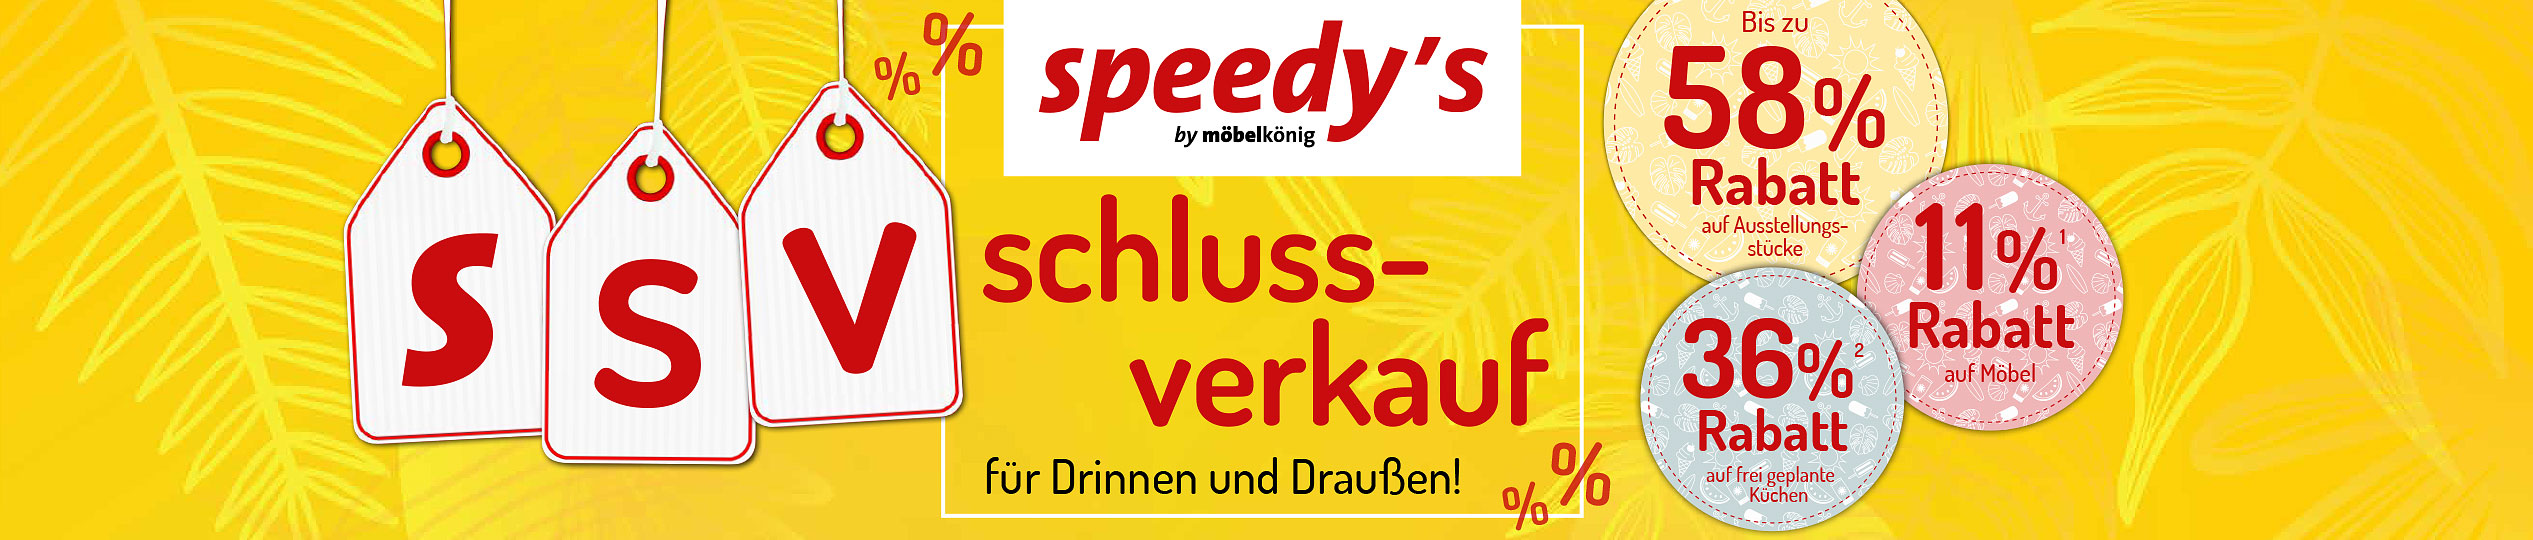 Speedy's Schluss-Verkauf für Drinnen und Draussen!